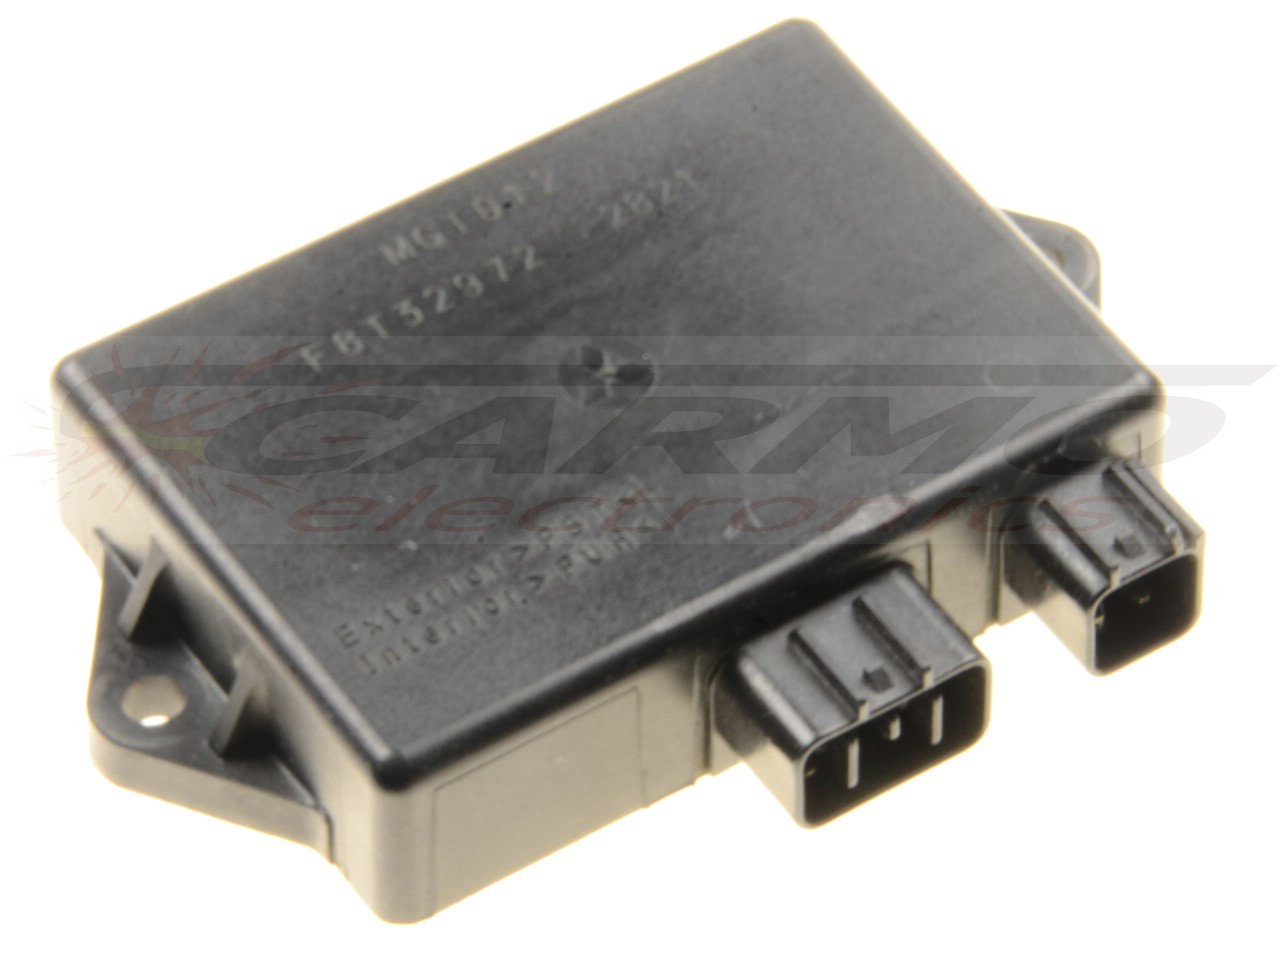 DR650 (SP46B) TCI CDI dispositif de commande boîte noire (MGT012, F8T32971)